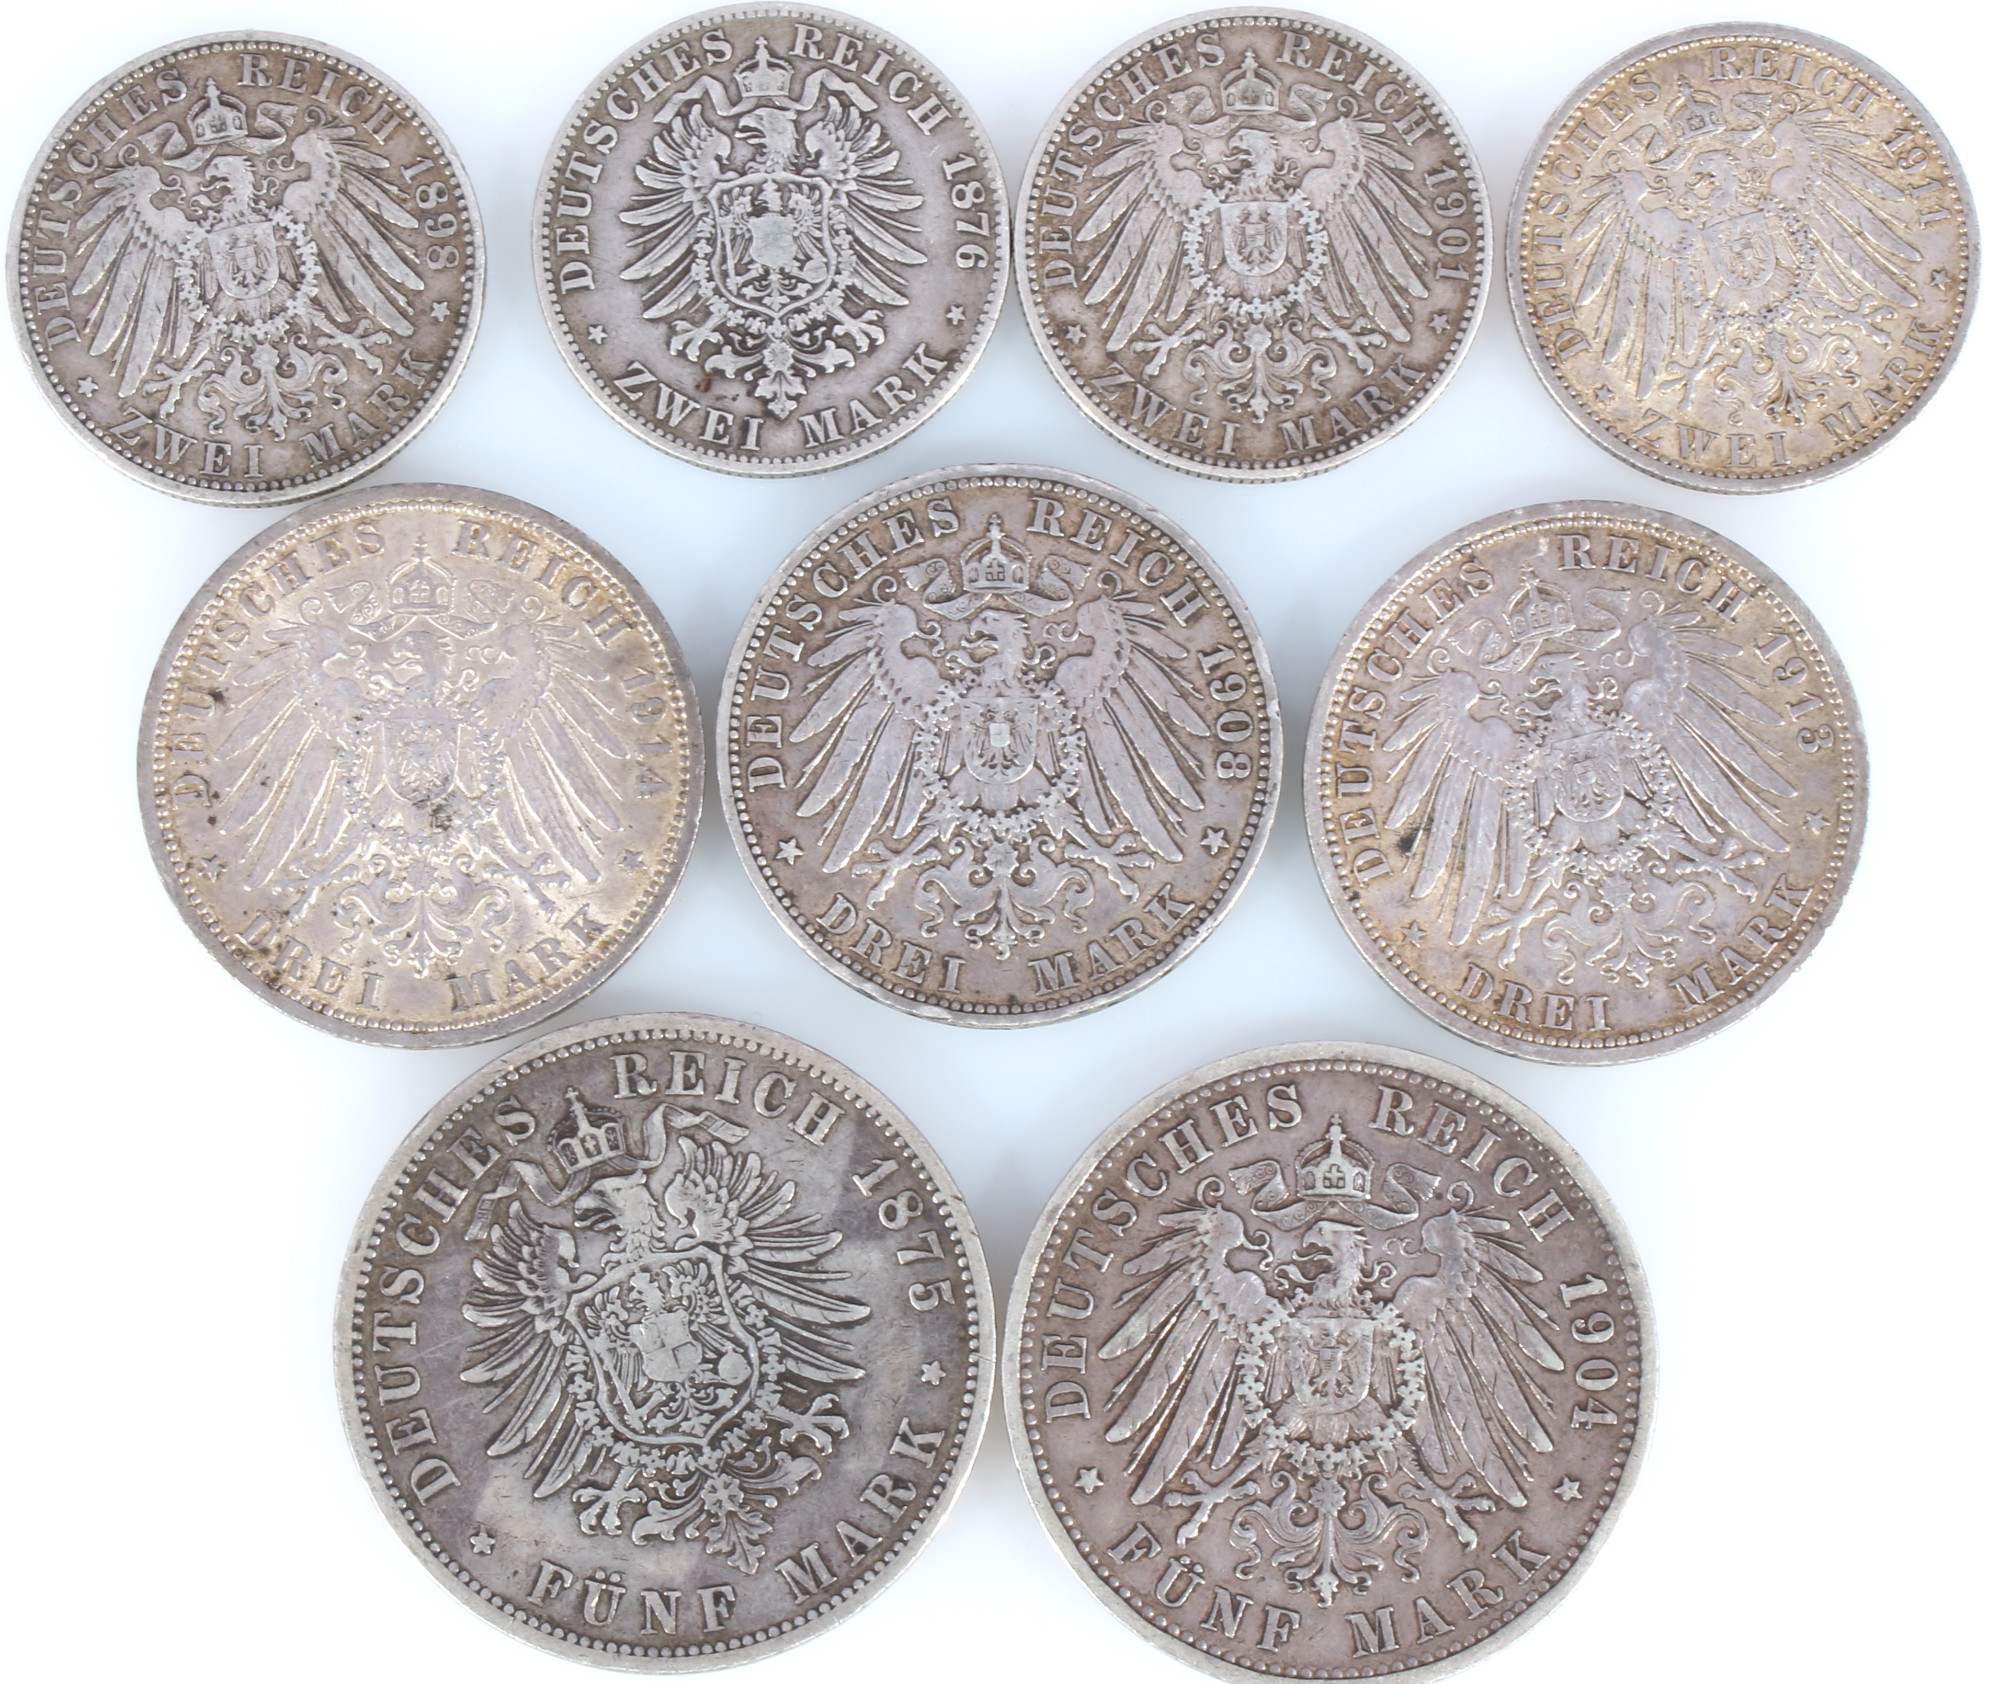 9 silver coins - Deutsche Mark 1875-1914 german empire, Silbermünzen Kaiserreich, - Image 2 of 2